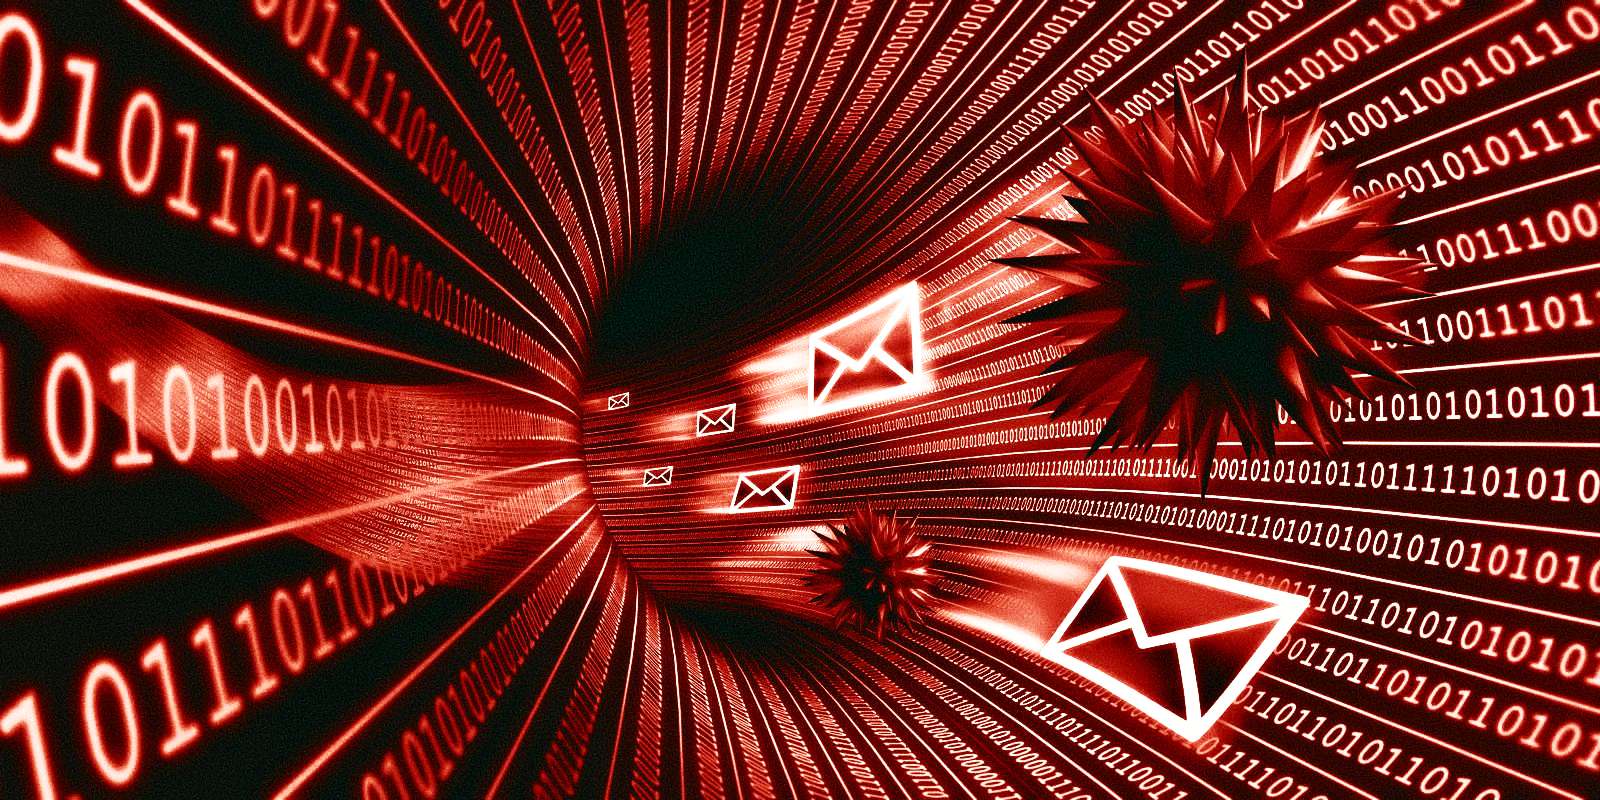 Kötü amaçlı yazılım dağıtan kimlik avı e-postaları